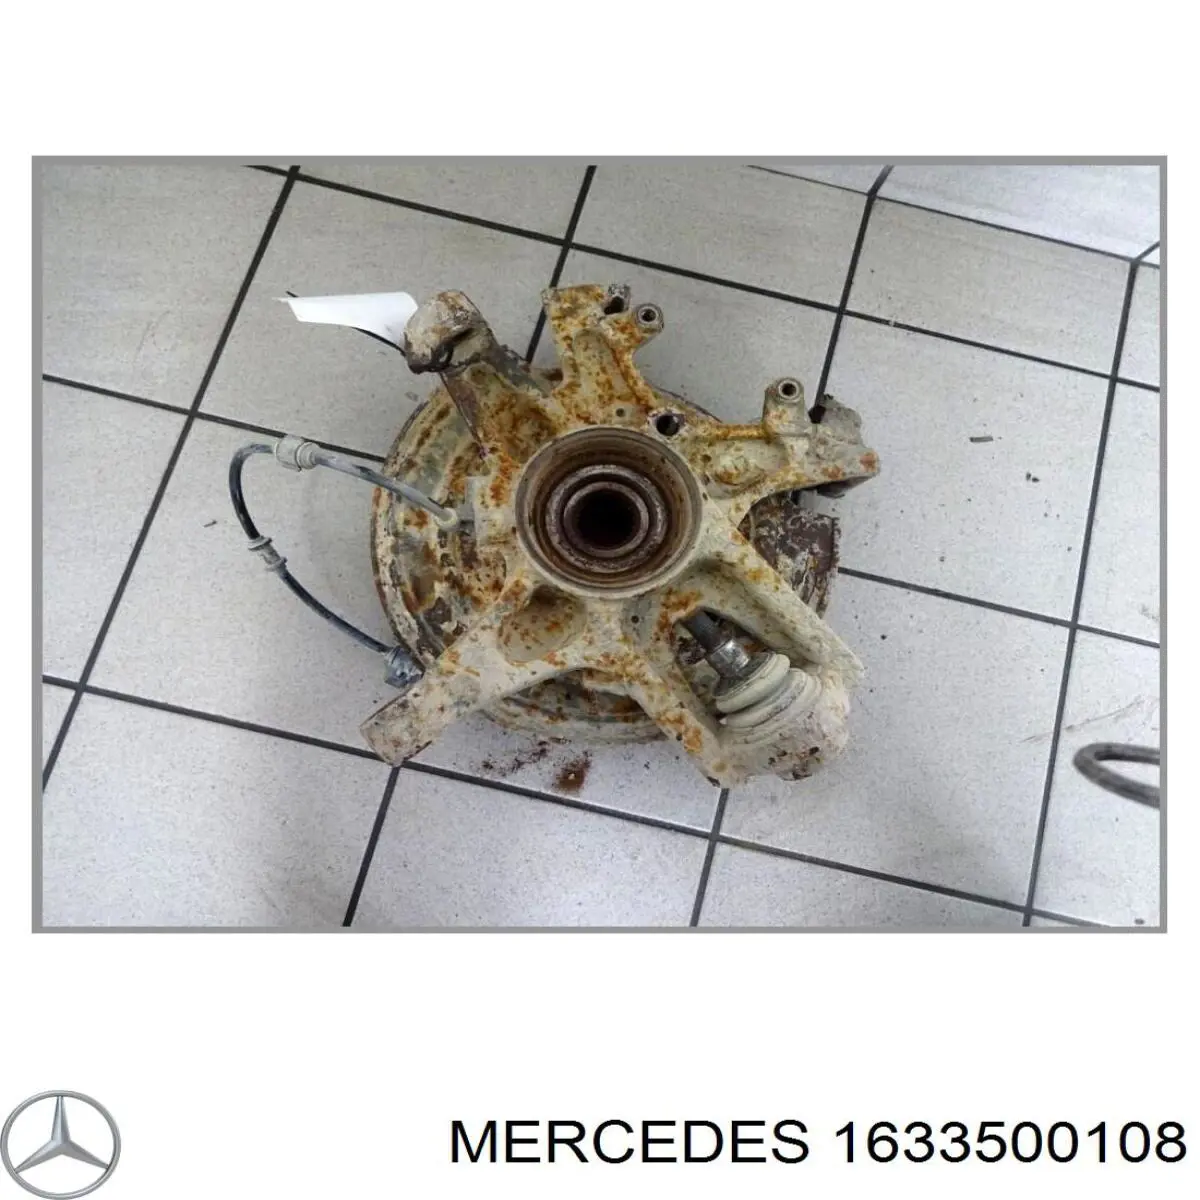 Pino moente (extremidade do eixo) traseiro esquerdo para Mercedes ML/GLE (W163)